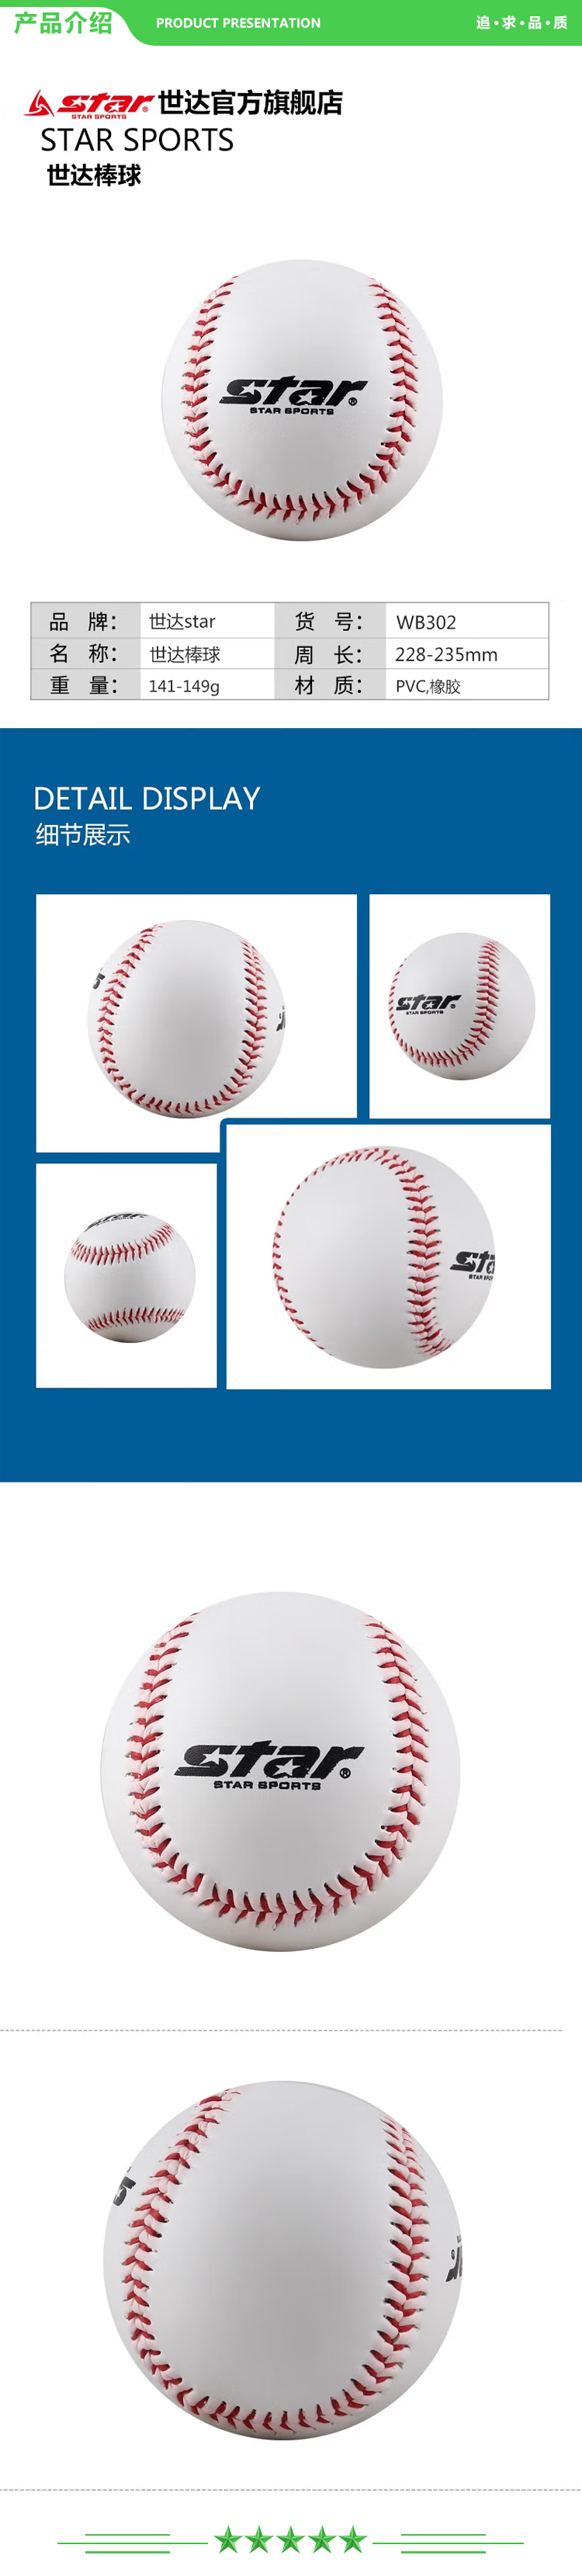 世达 star WB302 2个装 软式棒球9英寸青少年中小学生初学者训练考试比赛用棒球 .jpg